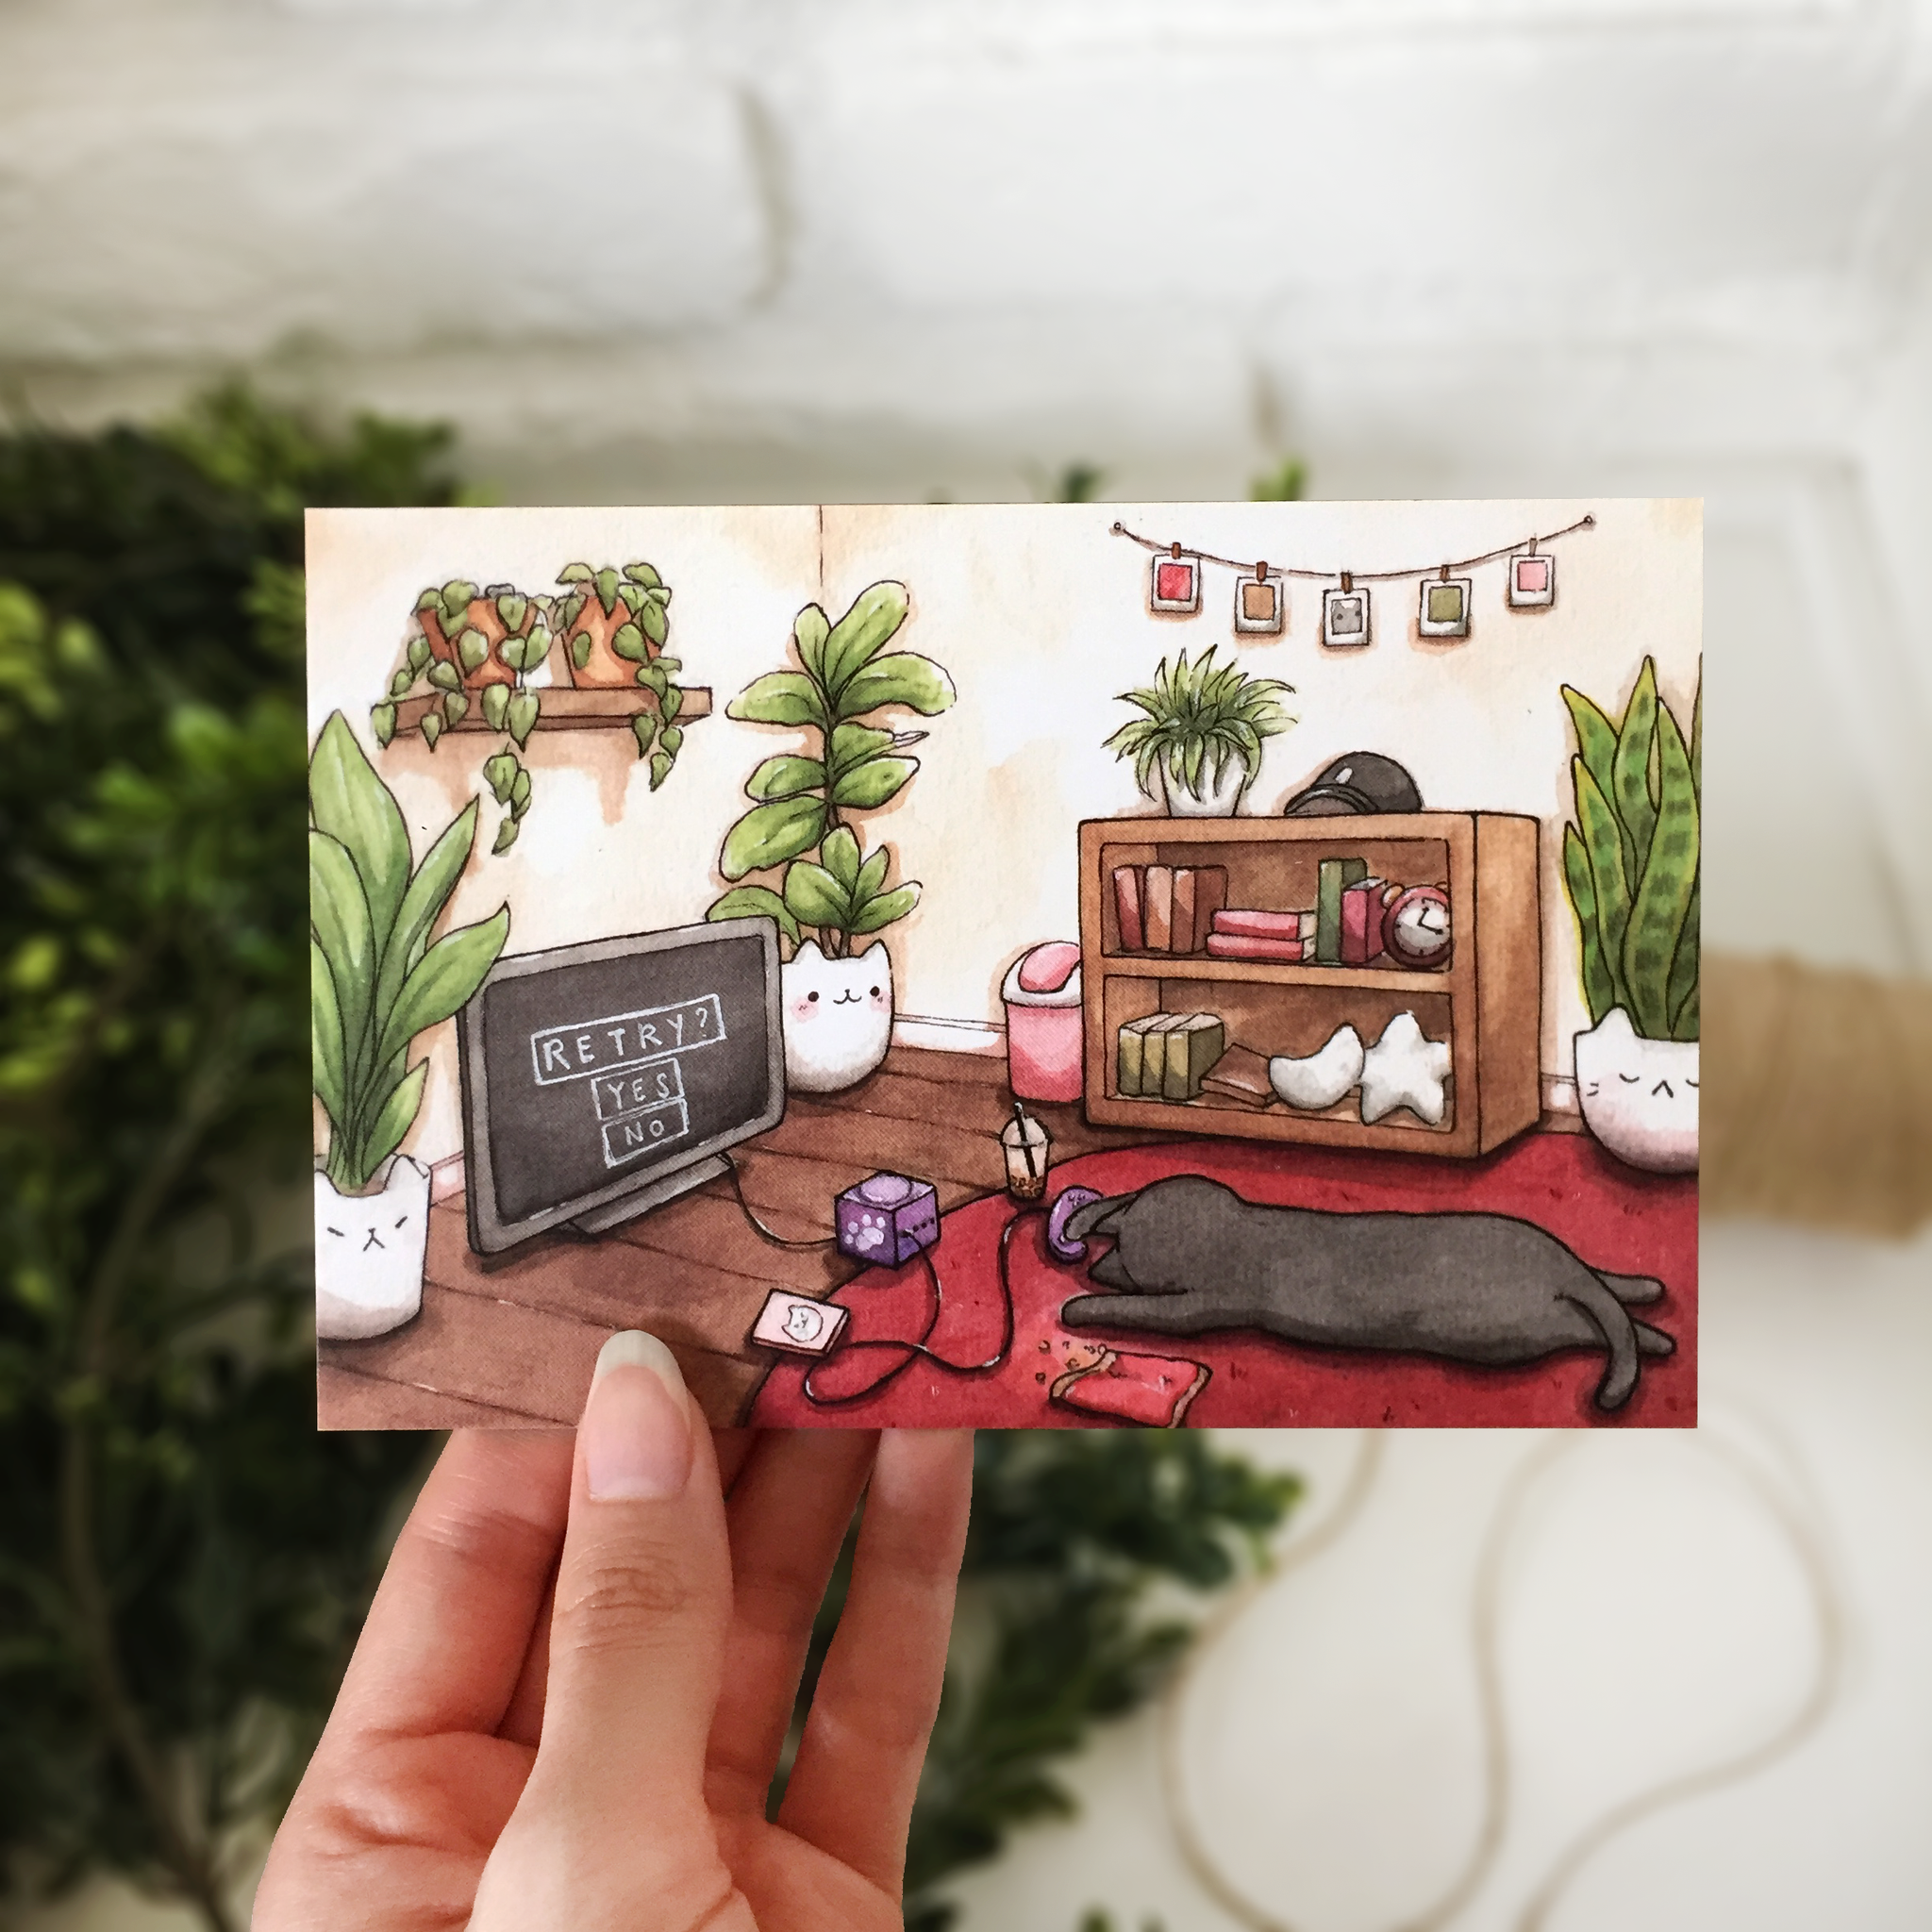 Retry Postcard - loststreetkat